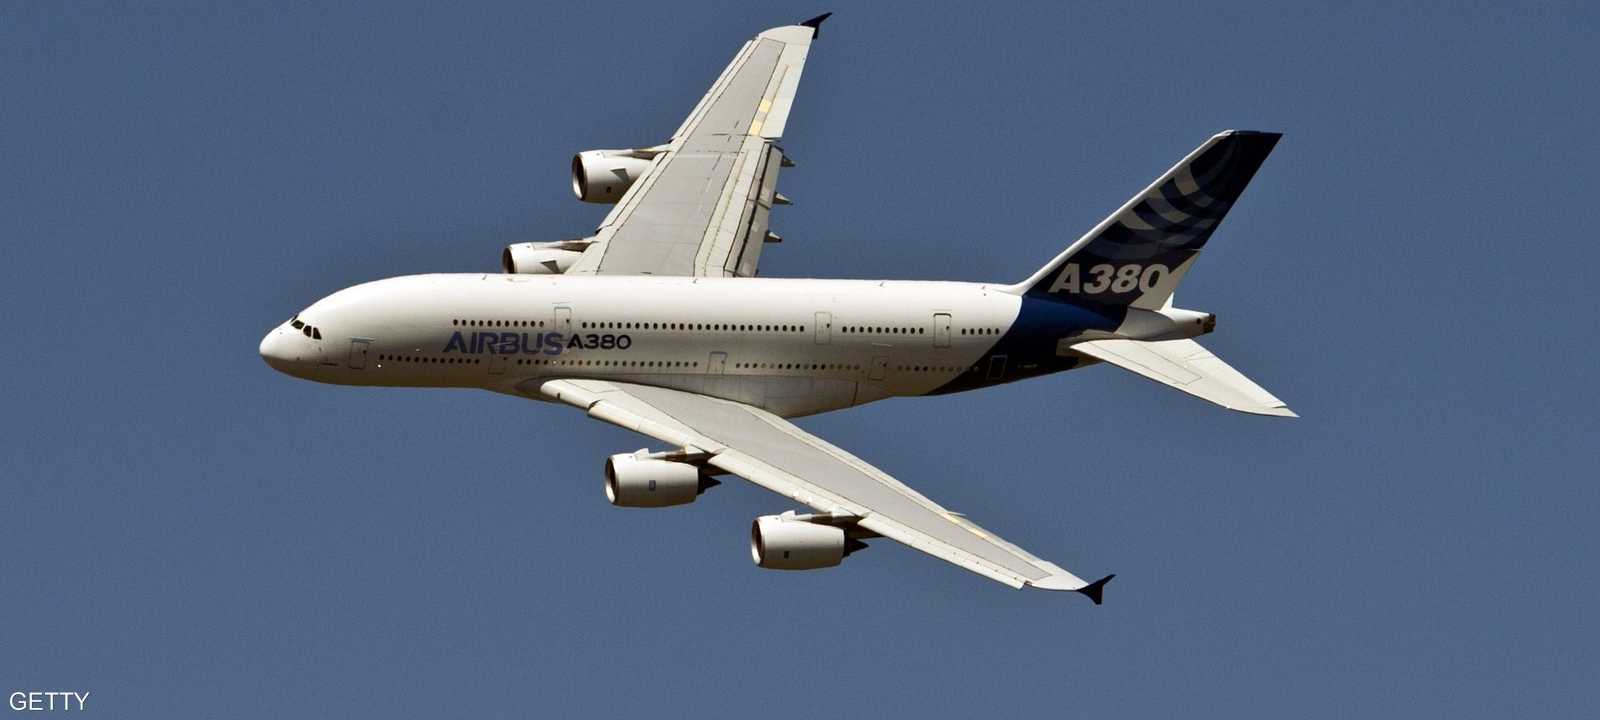 إحدى طائرات إيرباص A380 العملاقة.